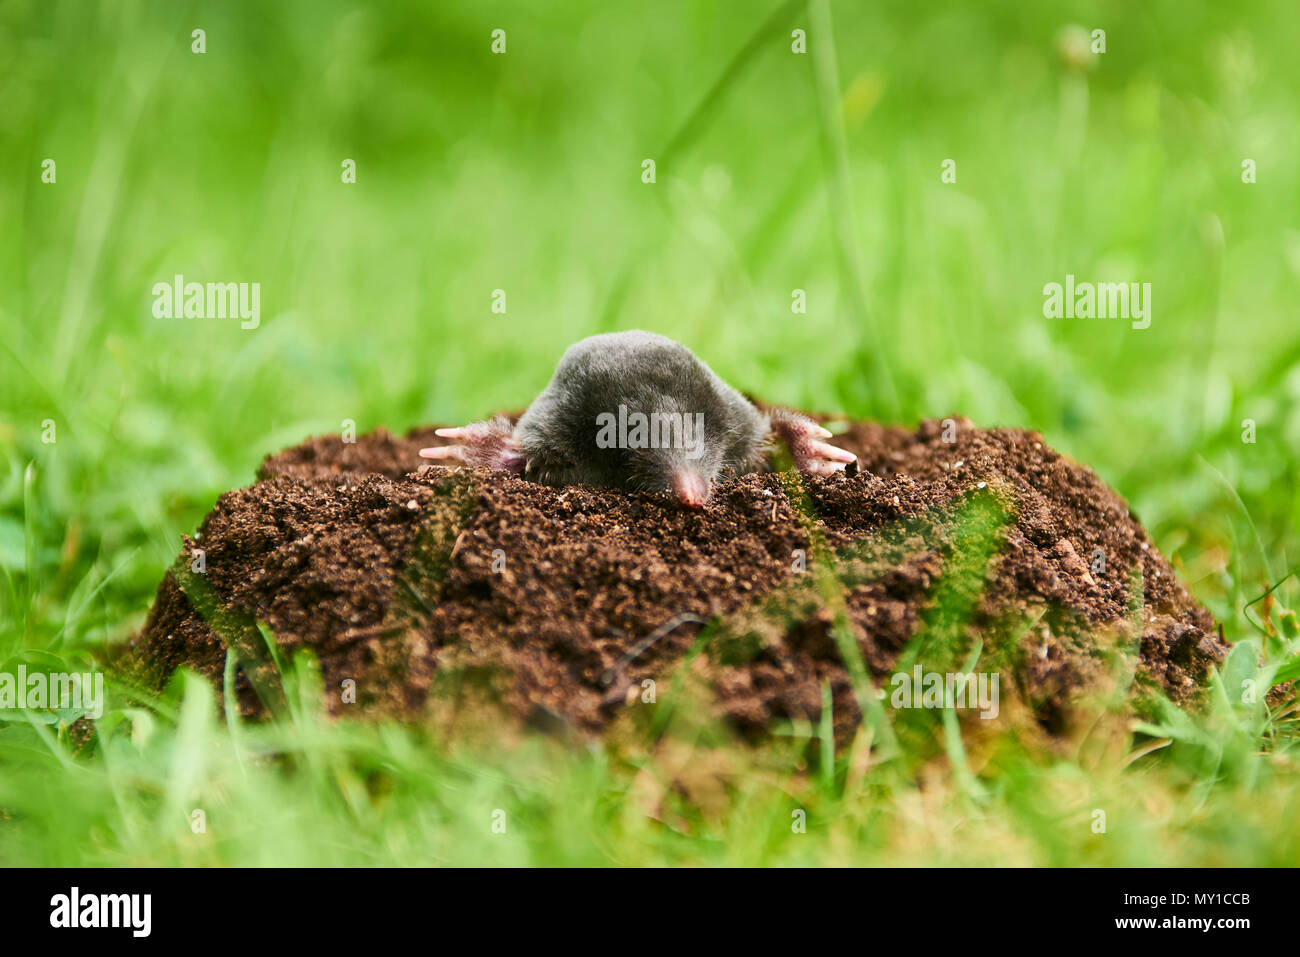 In der Nähe der Mole im Garten. Talpa europaea, kriechen aus braunen Maulwurfshügel, grünen Rasen Hintergrund. Selektiver Fokus Stockfoto